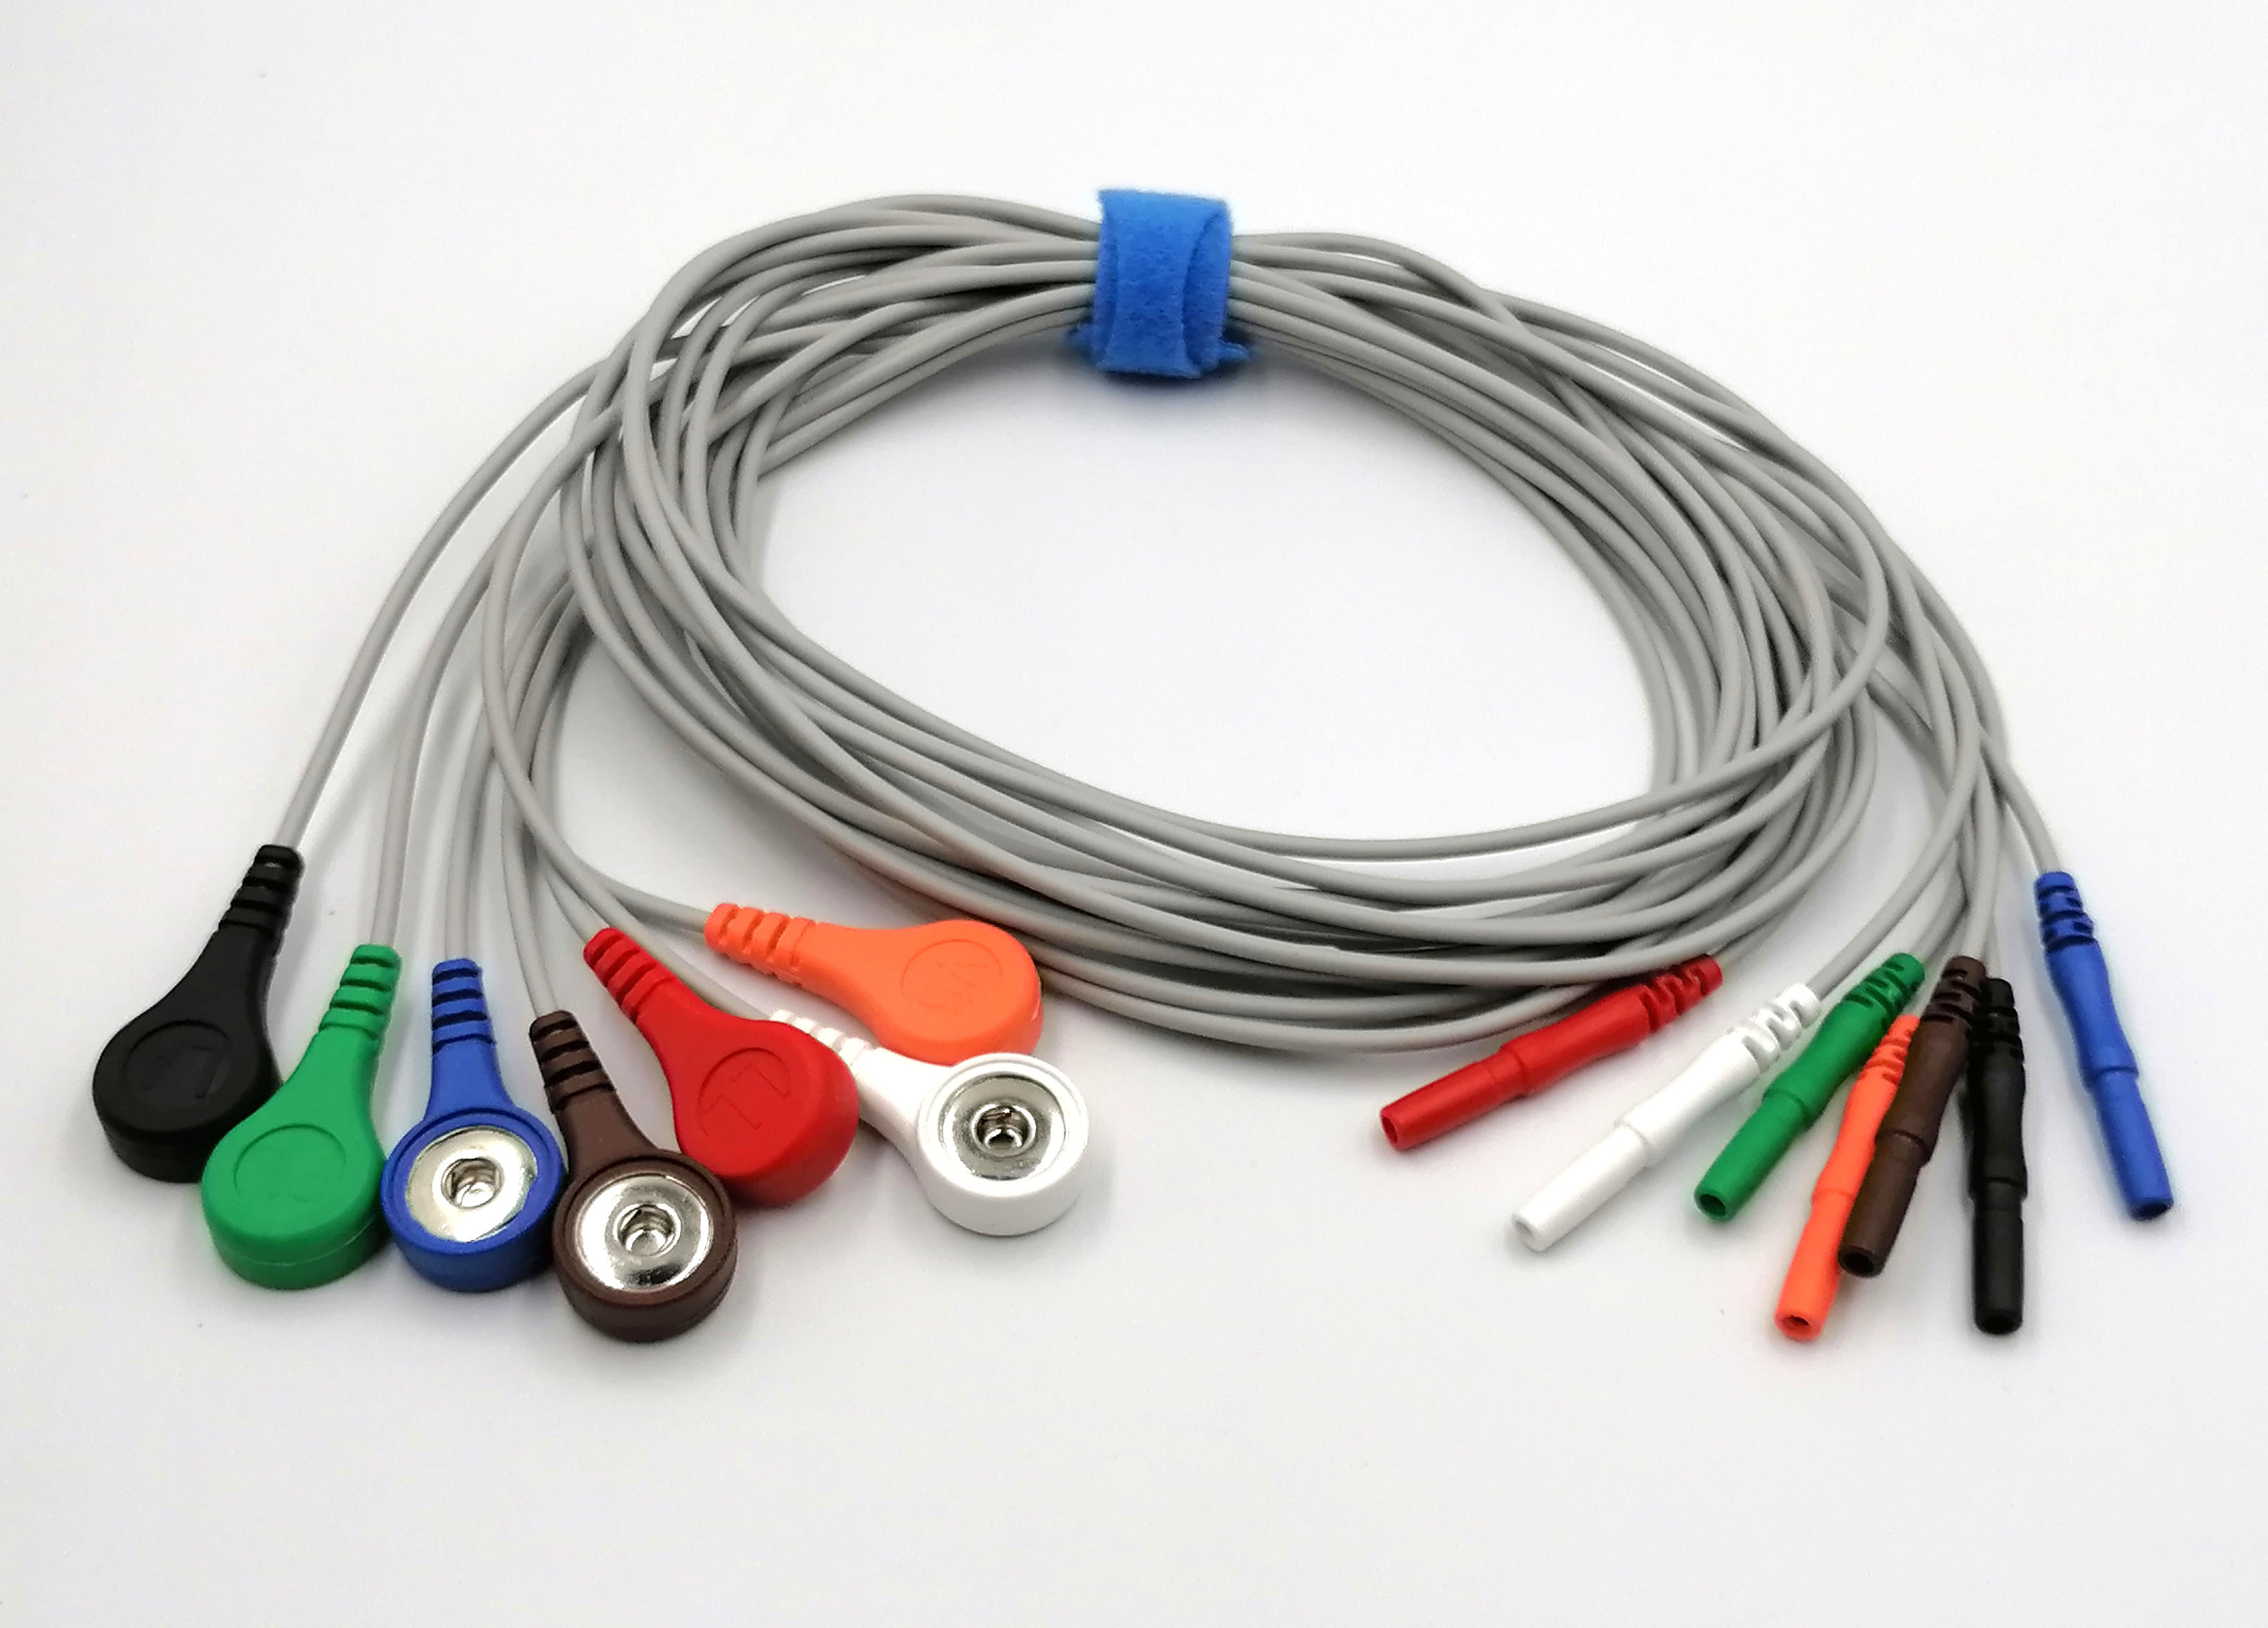 ЭКГ кабели отведений для суточного монитора Medilog Darwin FD5, FD-, DIN 1,5мм, комплект из 7 отведений